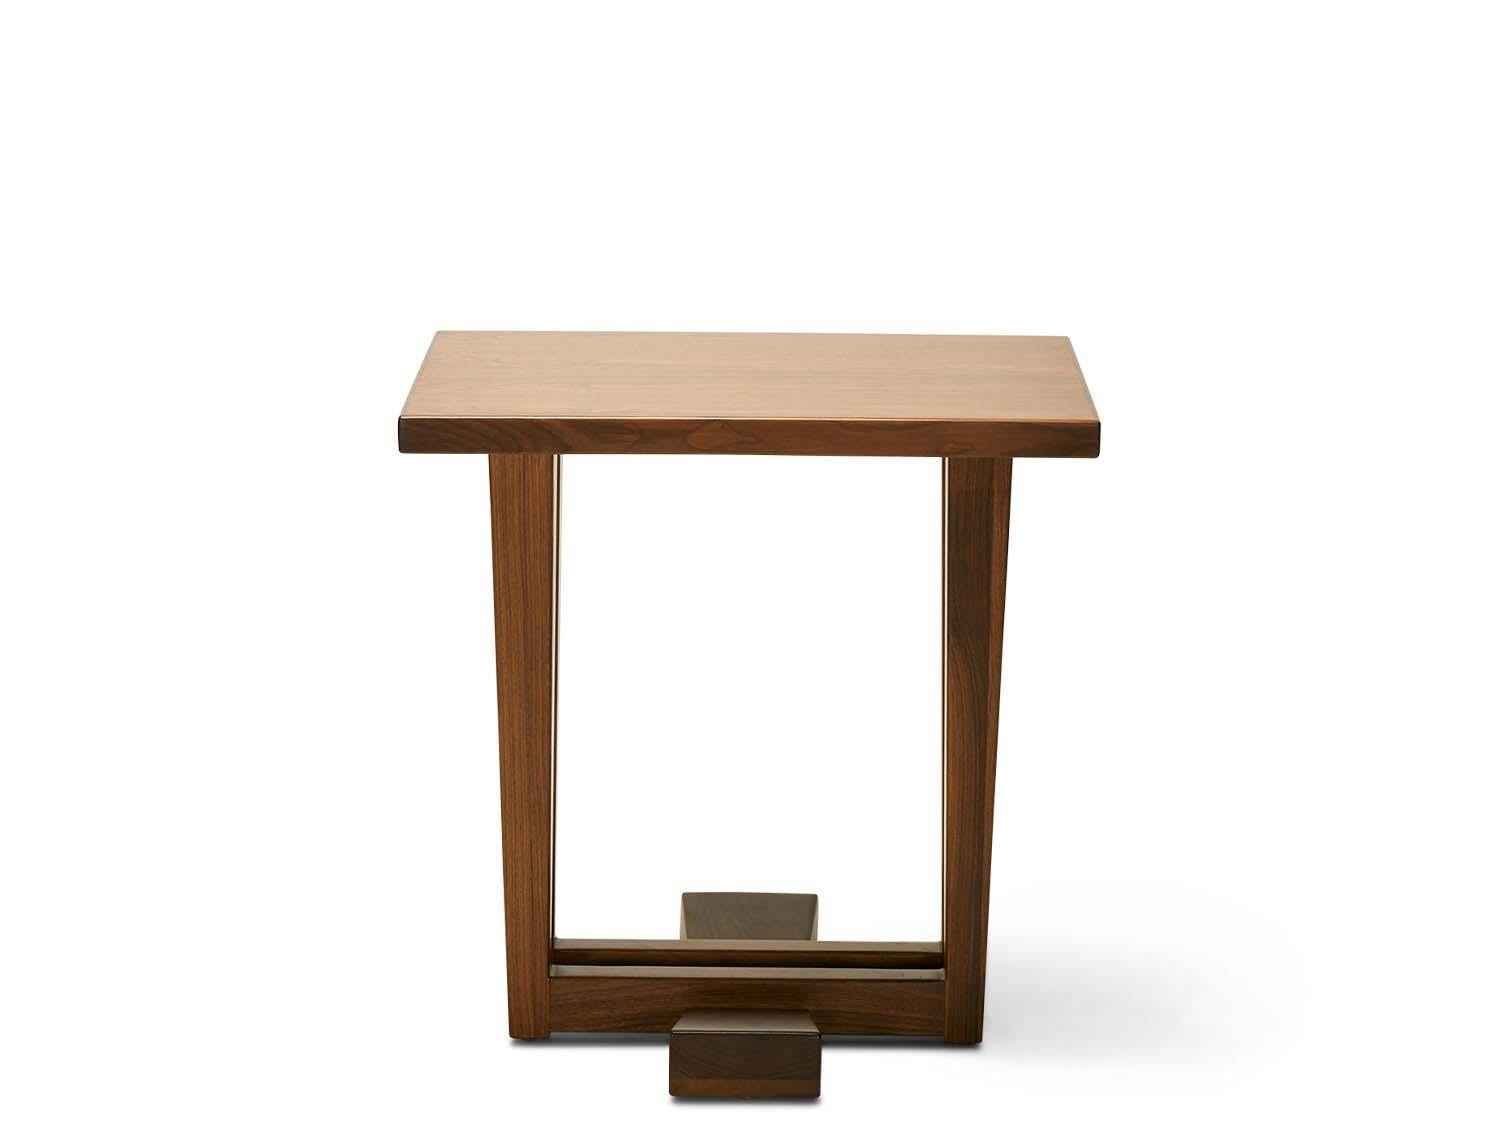 La table d'appoint Rialto - XL est fabriquée en noyer américain ou en chêne blanc et présente une base architecturale.

La collection Lawson-Fenning est conçue et fabriquée à la main à Los Angeles, en Californie. Renseignez-vous pour savoir quelles